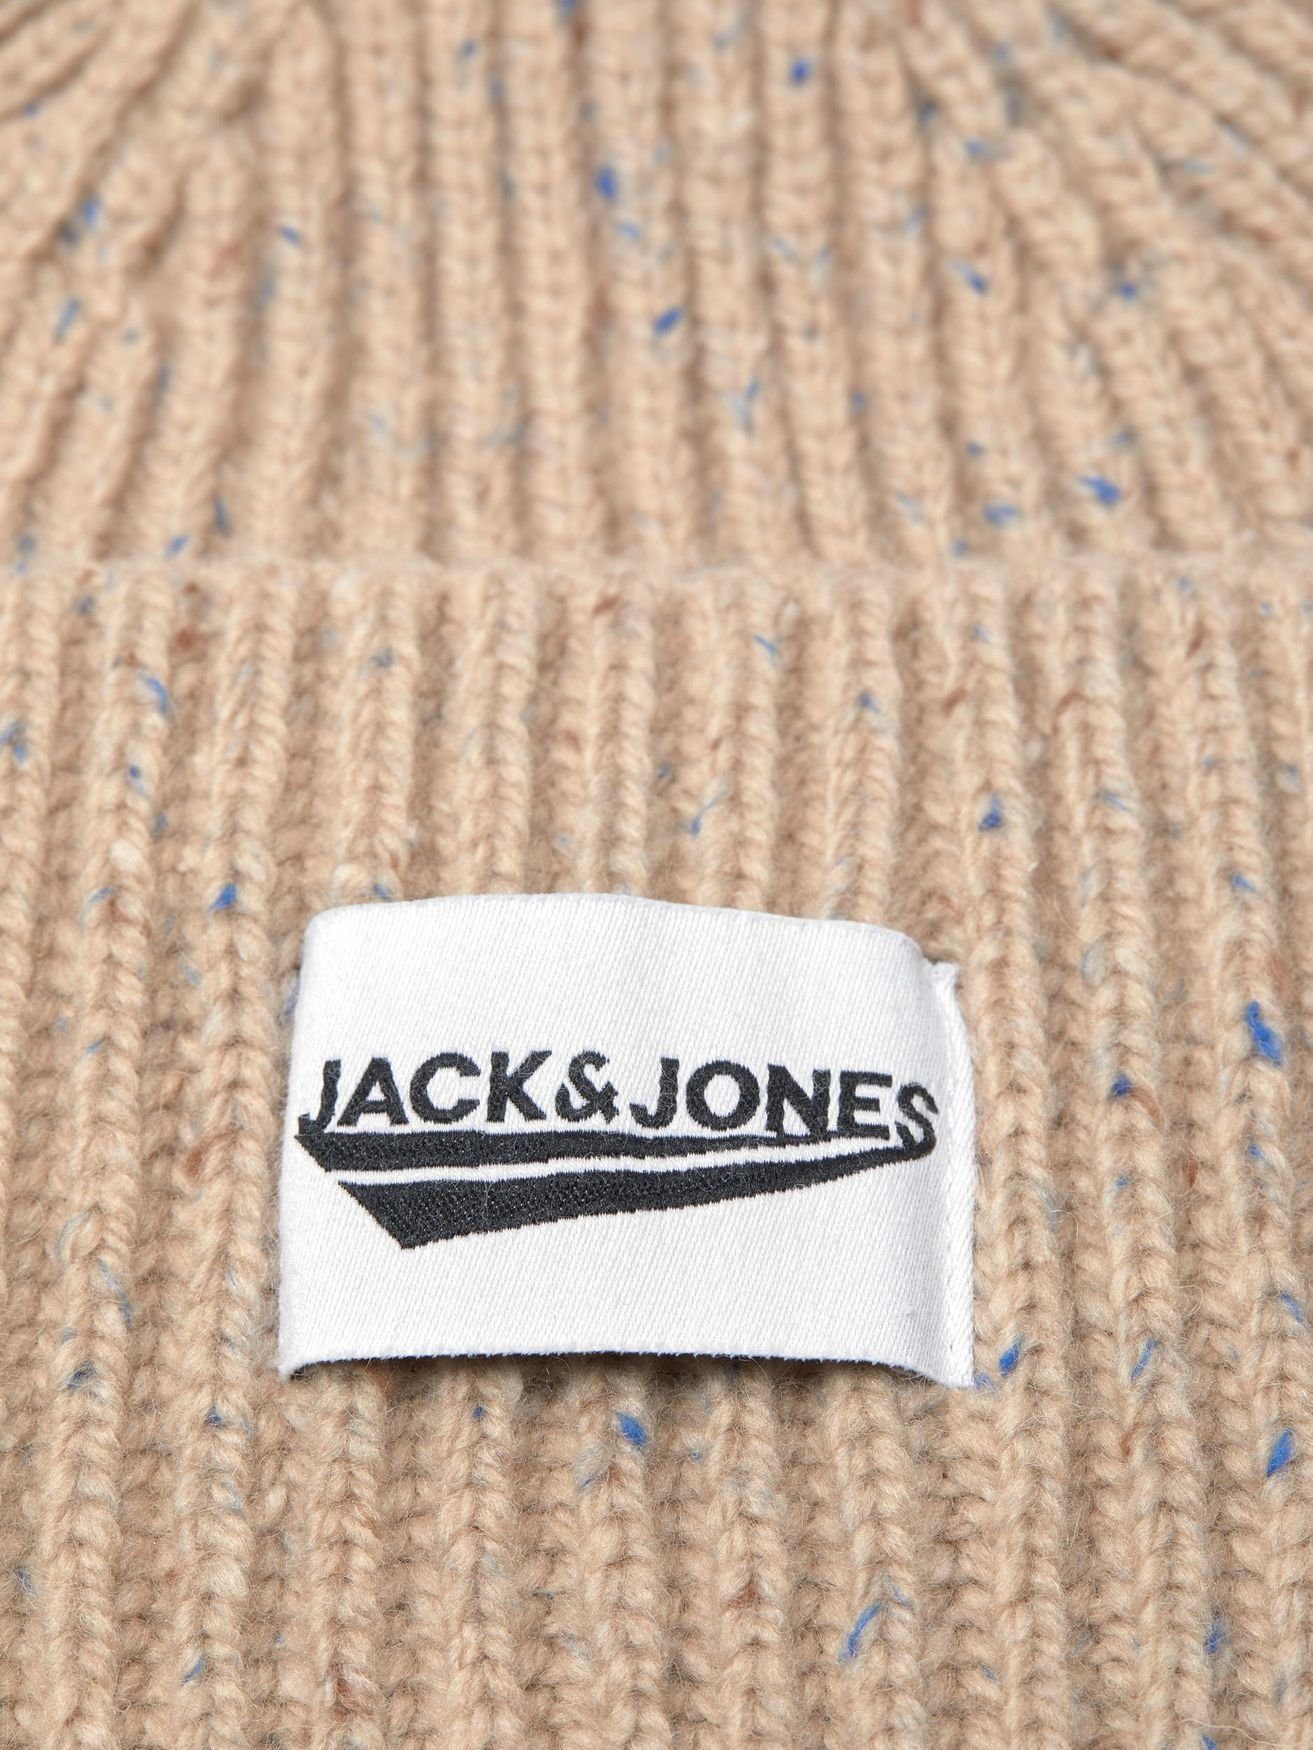 Beanie Mütze Beige Winter Kopfbedeckung & Jones in Strickmütze Jack Gerippte 4674 JACIVAR